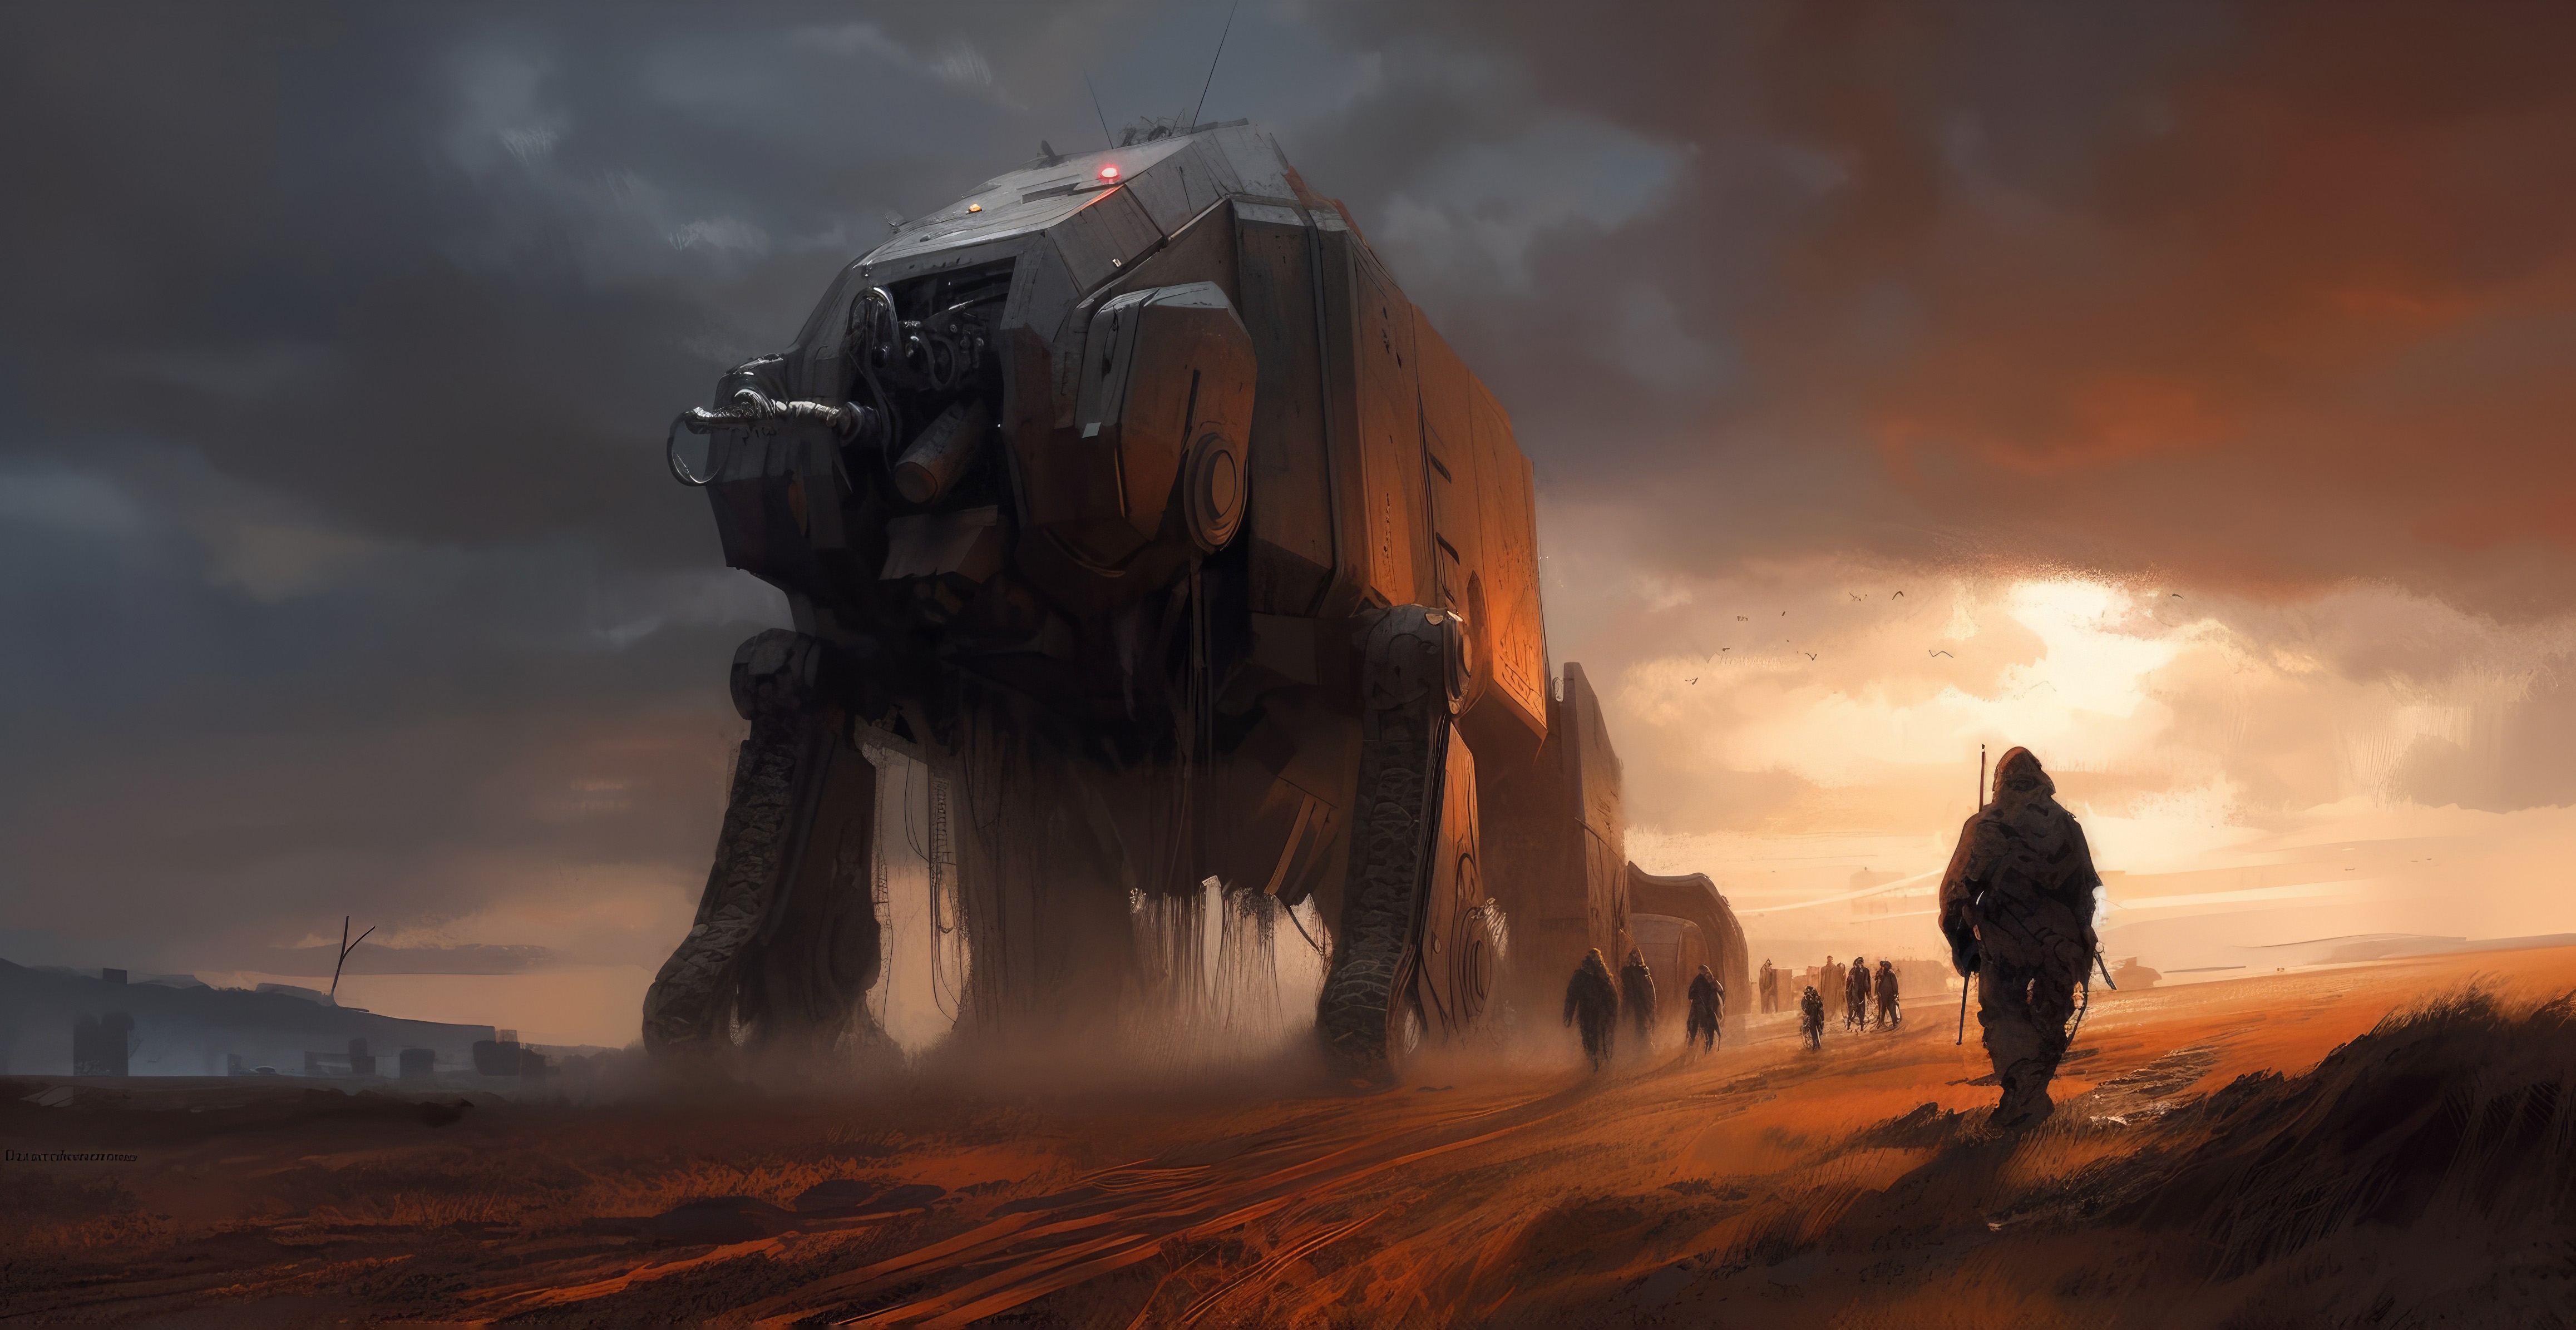 General 4630x2391 AI art illustration science fiction landscape desert vehicle